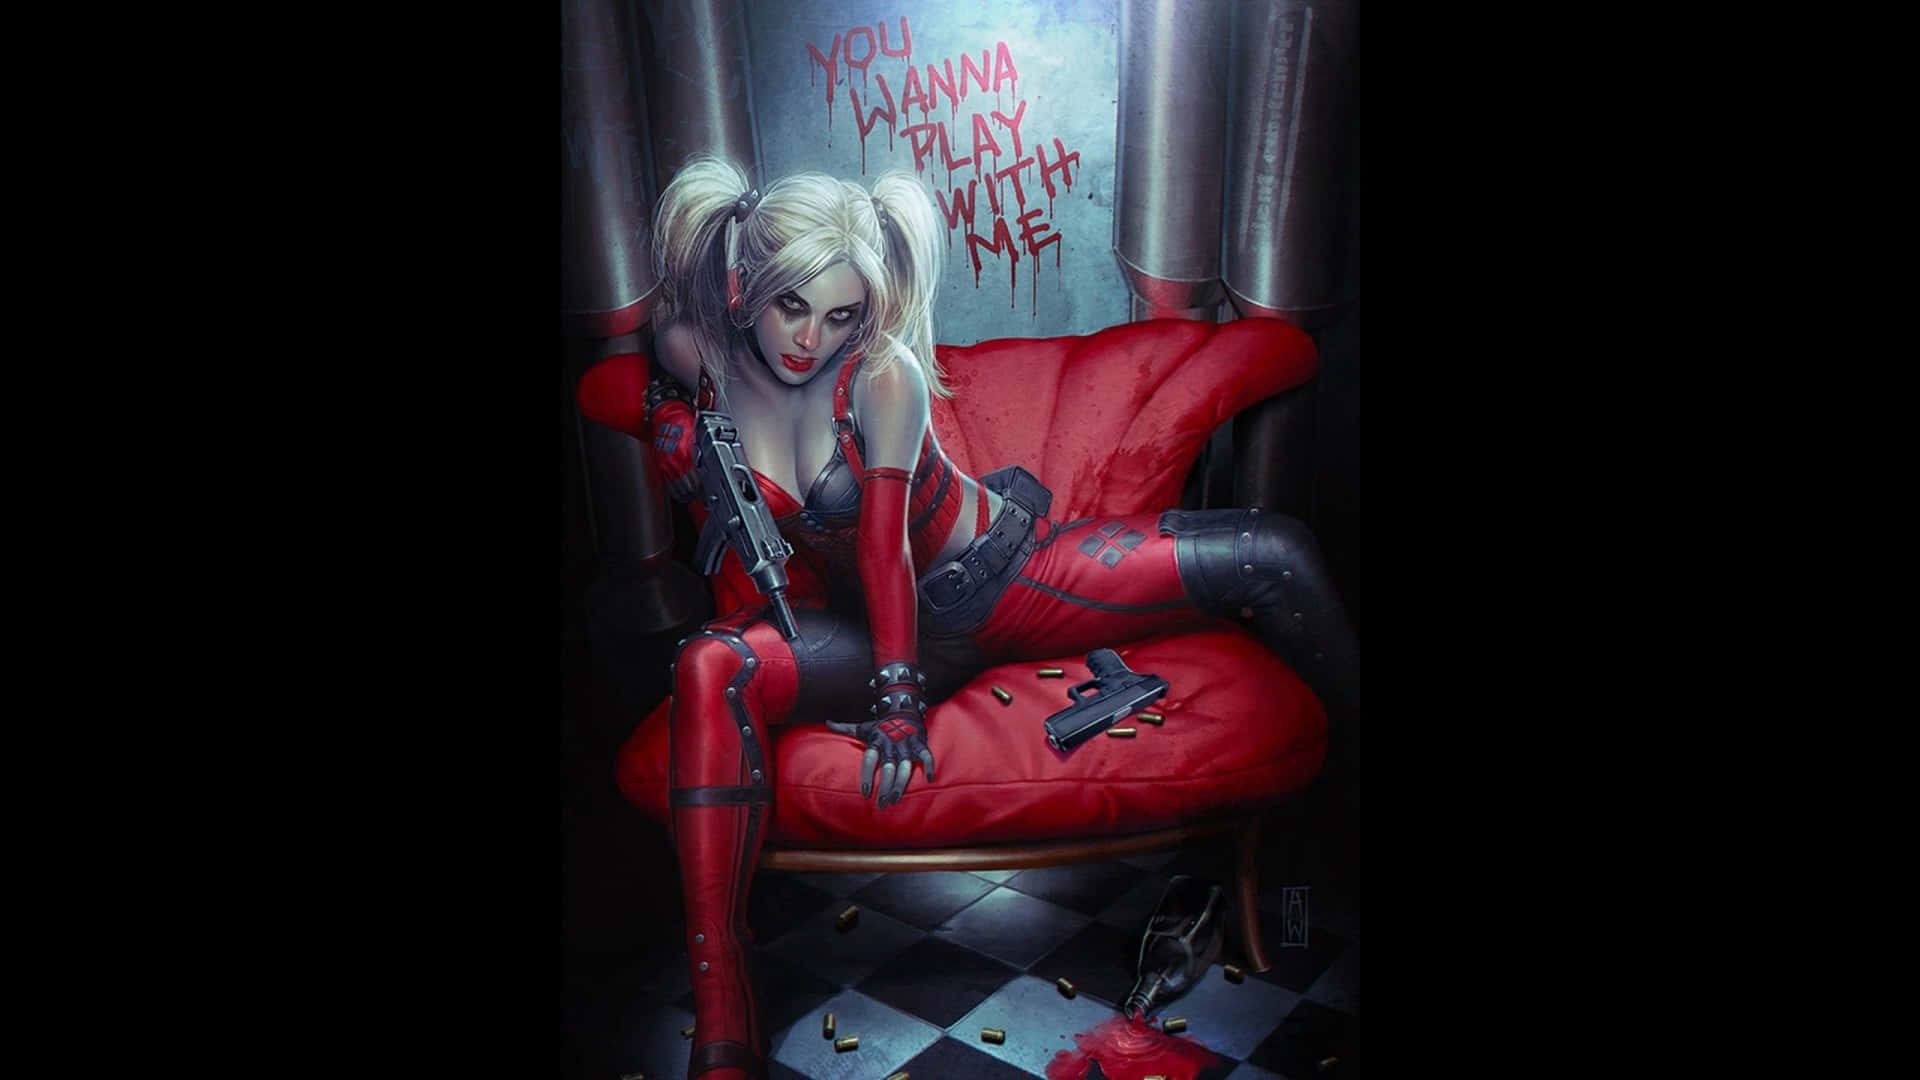 Billeder af Harley Quinn livner enhver baggrund op.